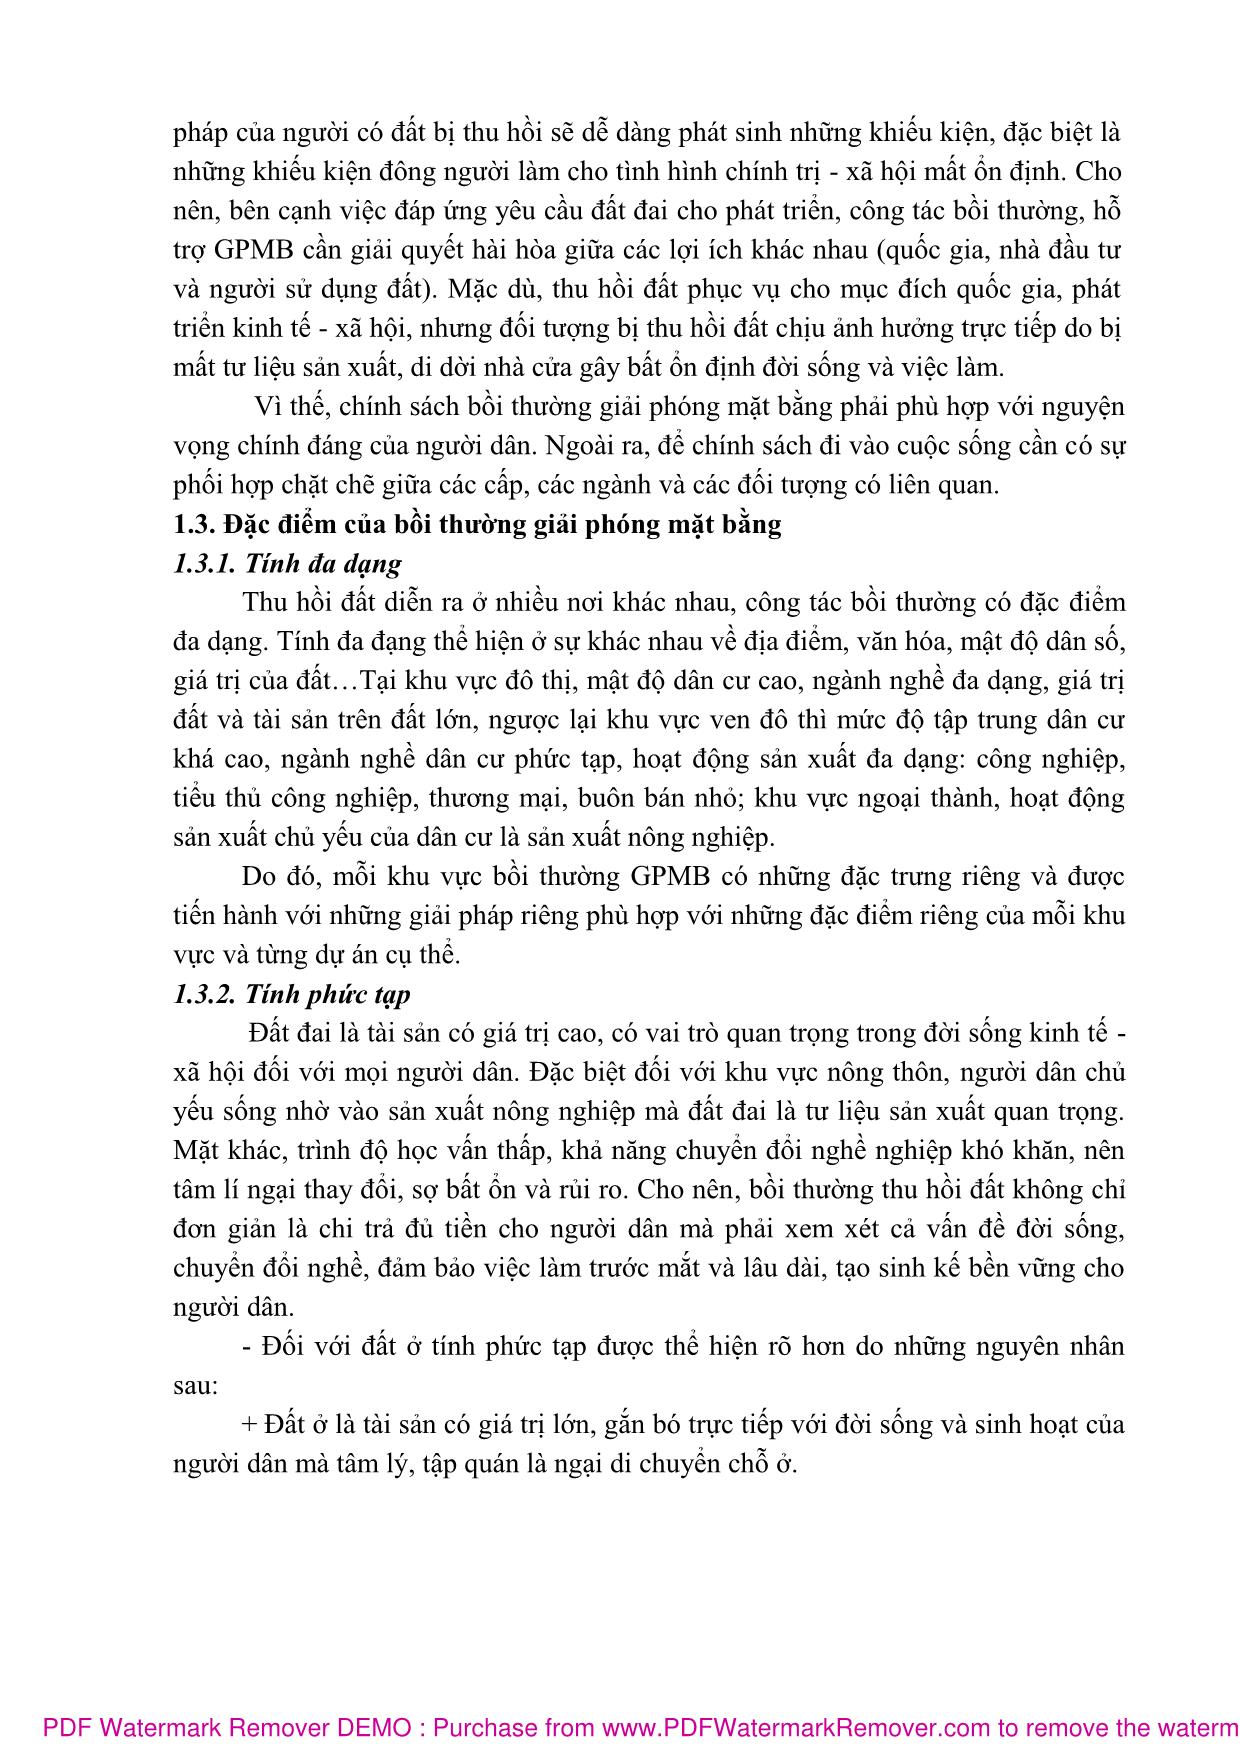 Bài giảng Bồi thường giải phóng mặt bằng (Phần 1) - Nguyễn Thị Nhật Linh trang 9